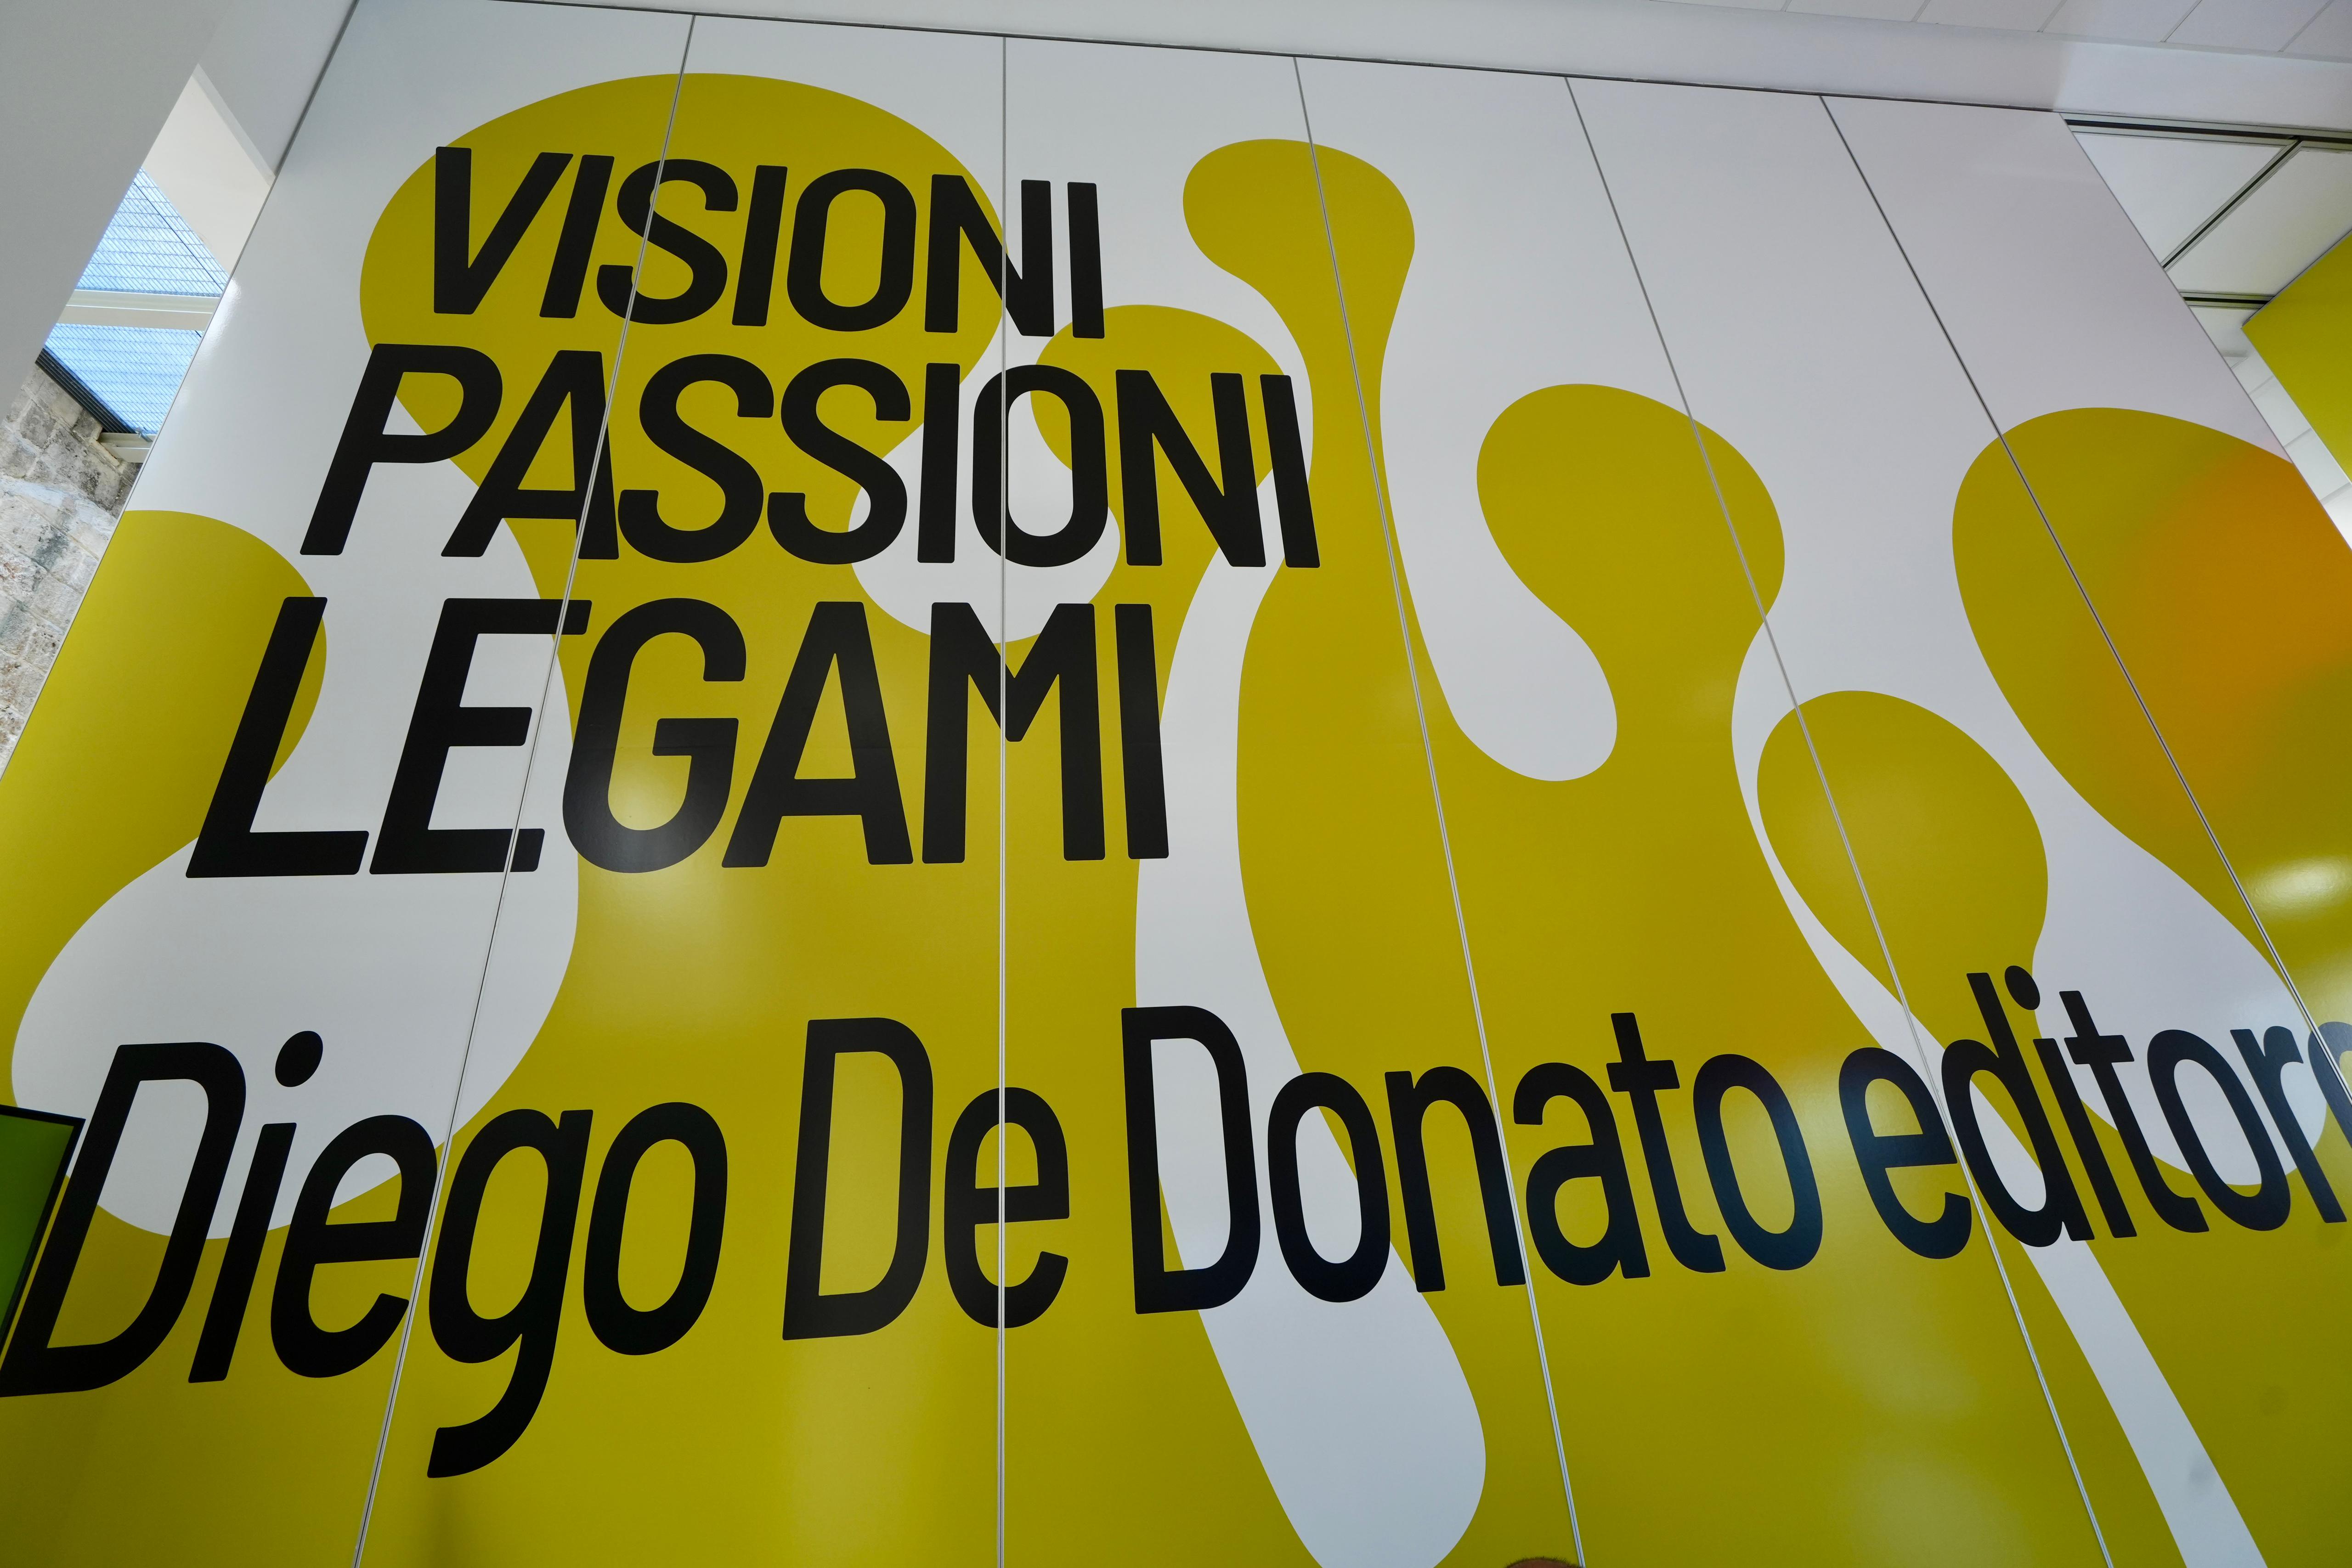 Galleria Il presidente Emiliano alla mostra “Visioni, passioni, legami. Diego De Donato editore” - Diapositiva 7 di 8